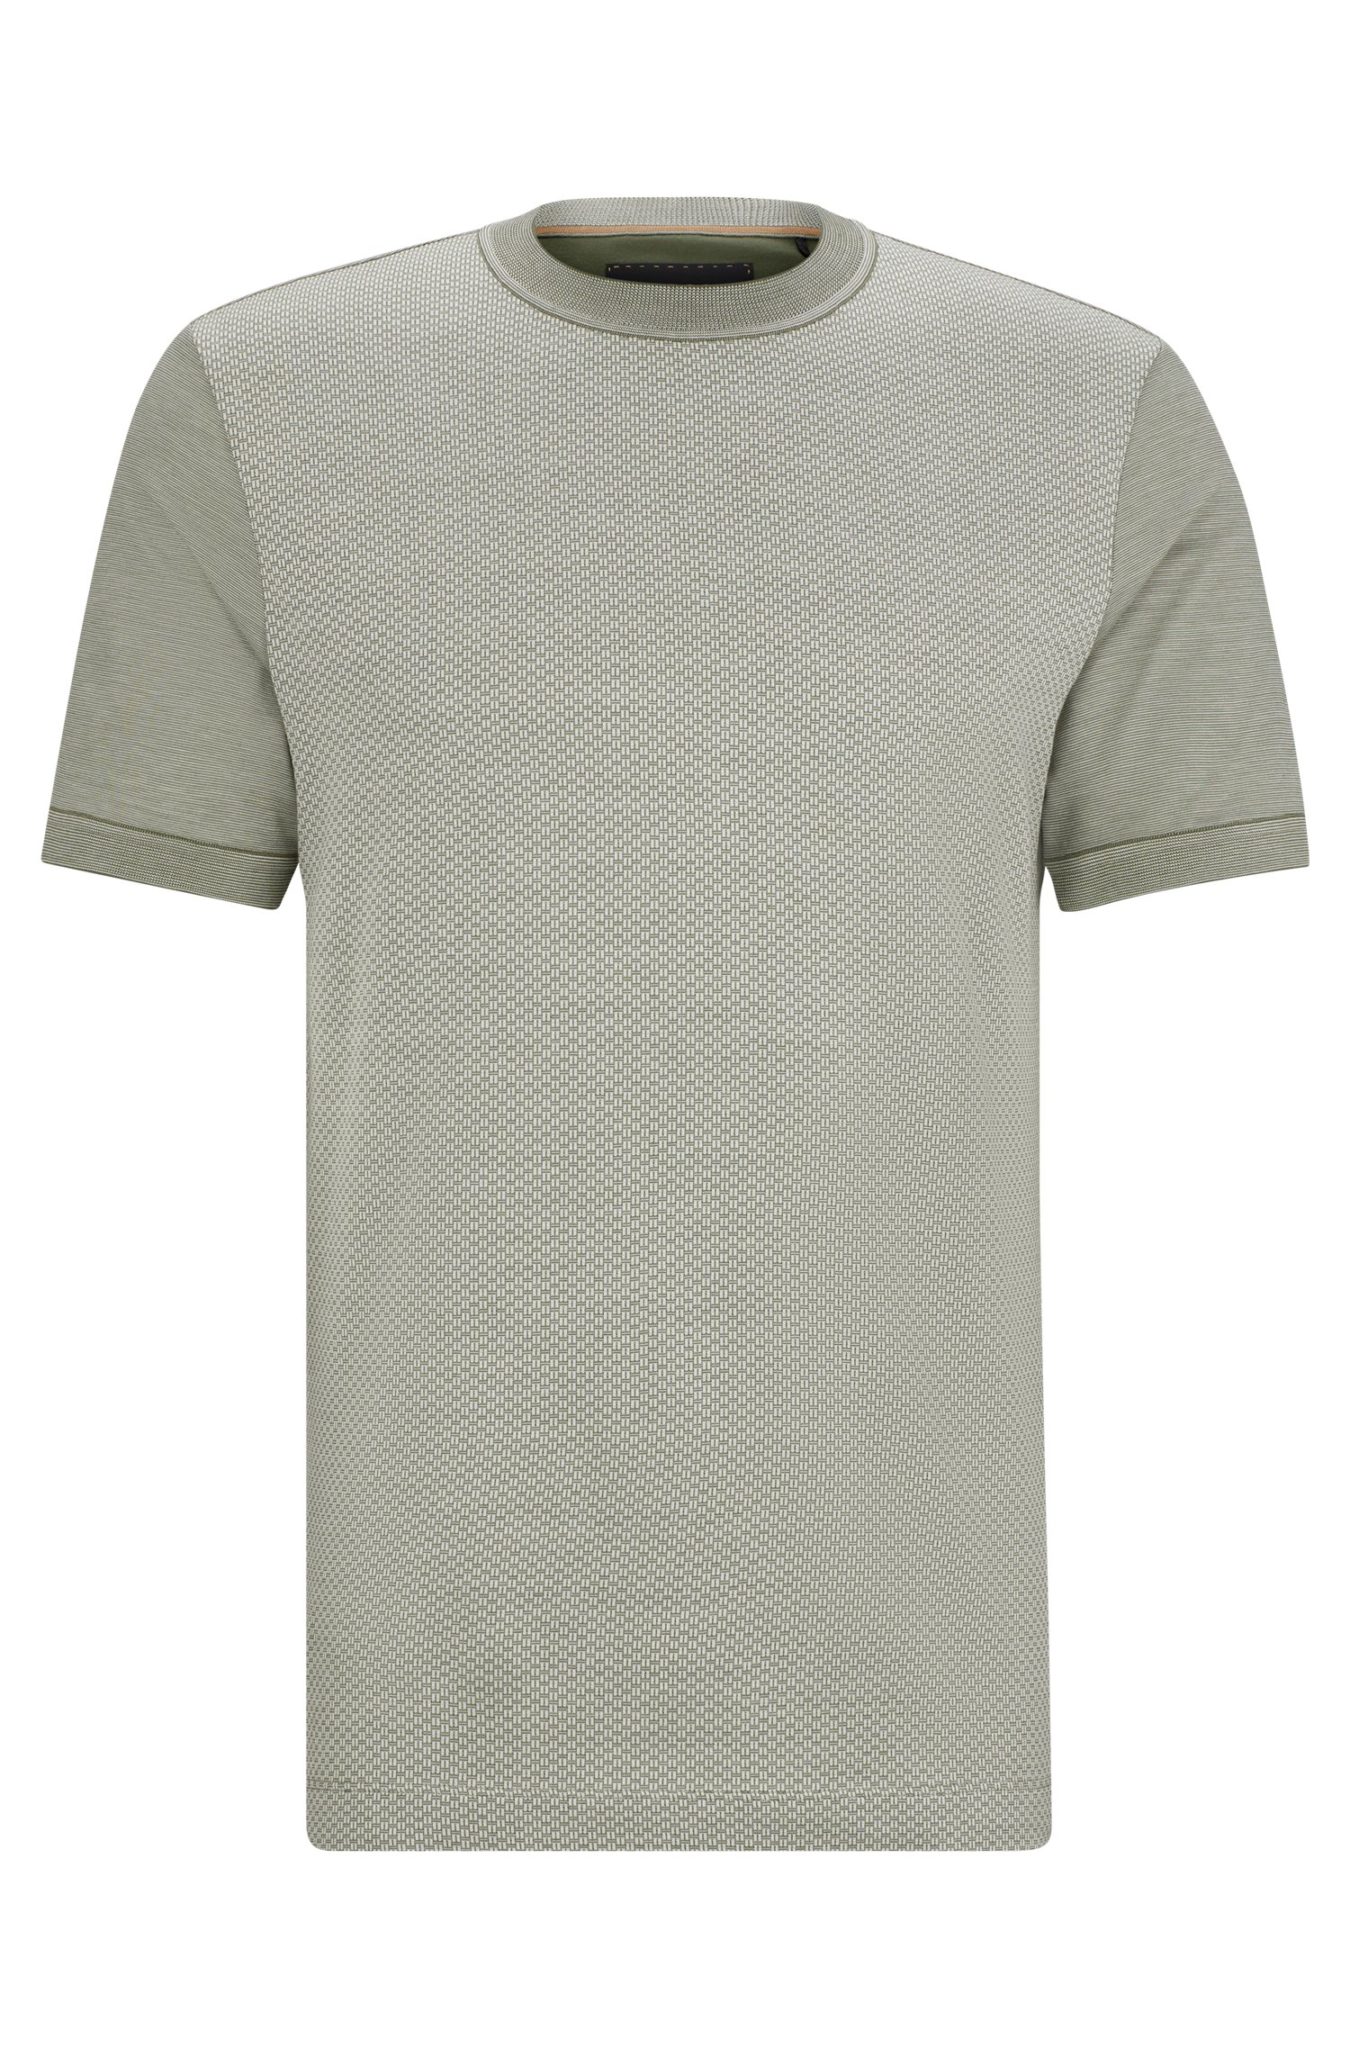 Hugo Boss T-shirt Regular Fit en coton et soie aux structures mélangées